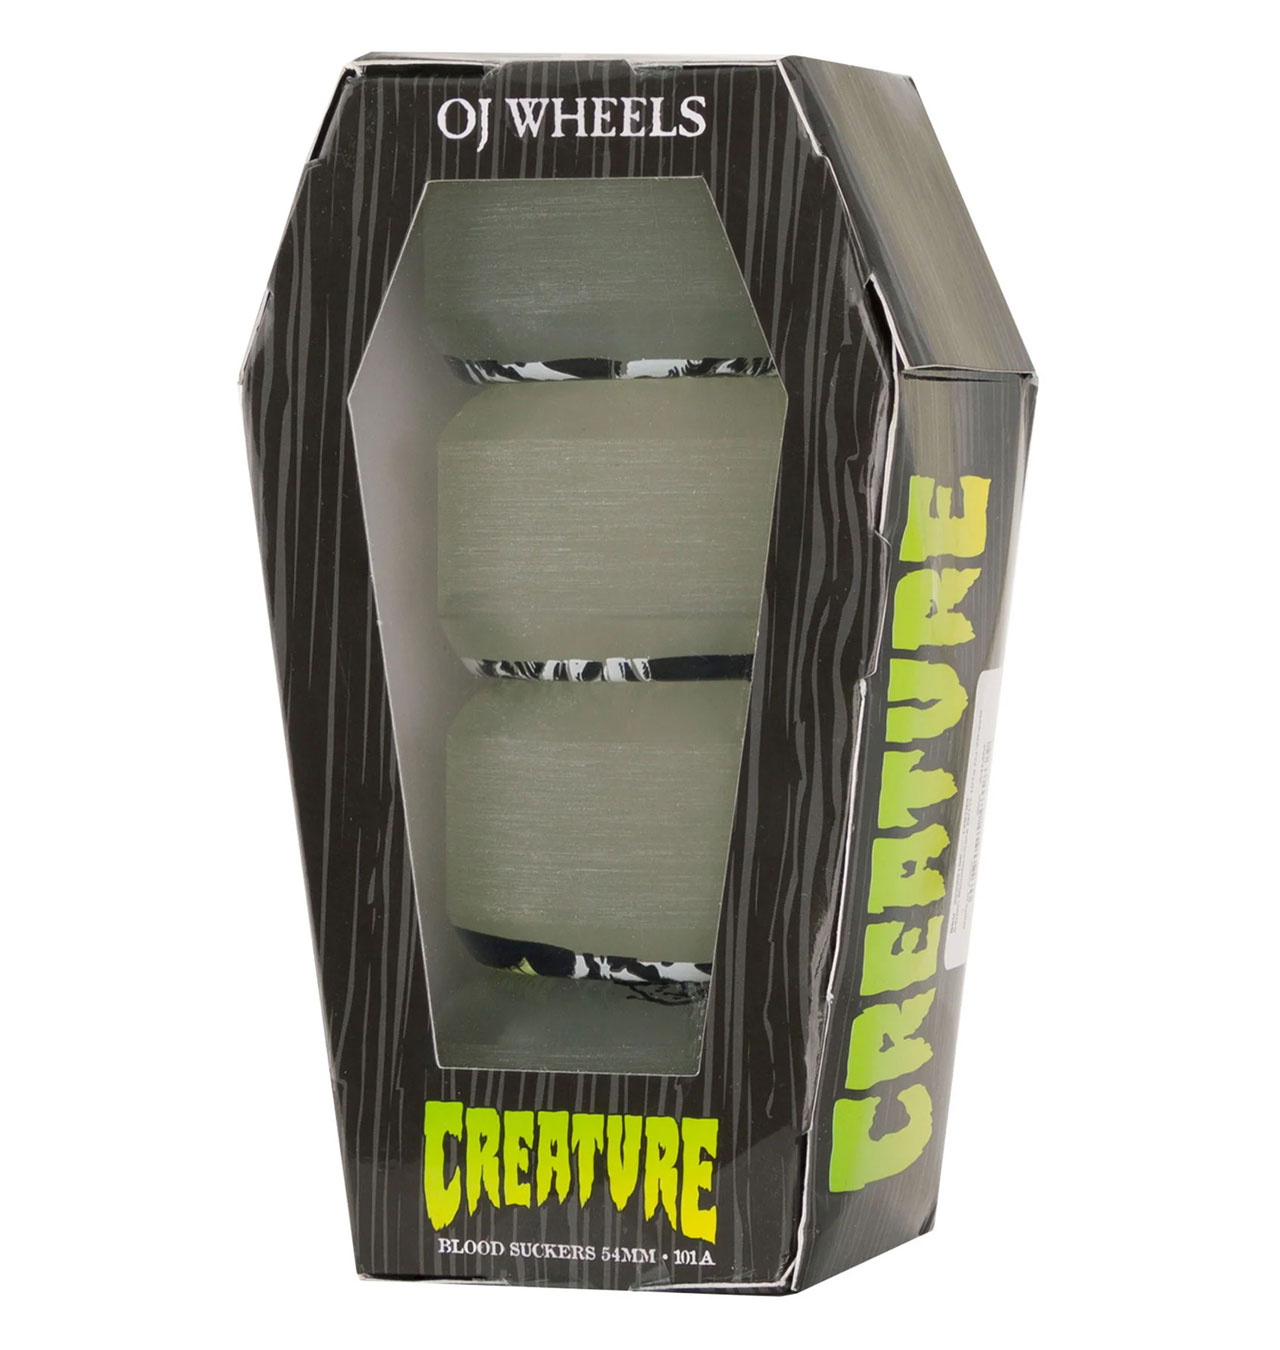 OJ-Wheels---Creature-Coffin-Box-Bloodsuckers-101a-Skateboard-Wheels---54mm-1